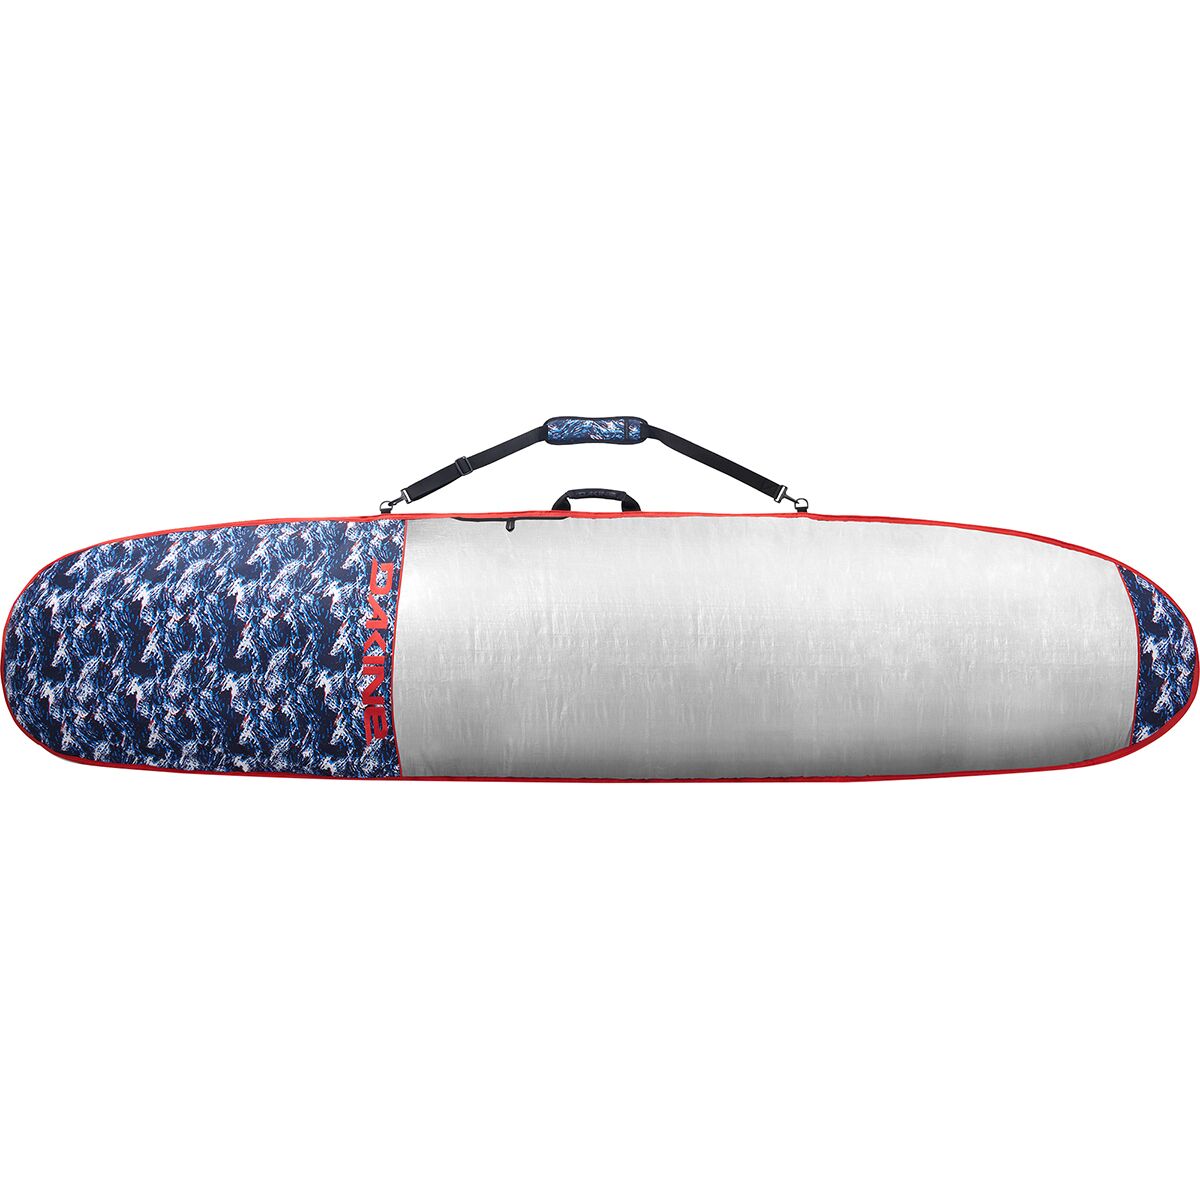 Daylight Noserider Surfboard Bag